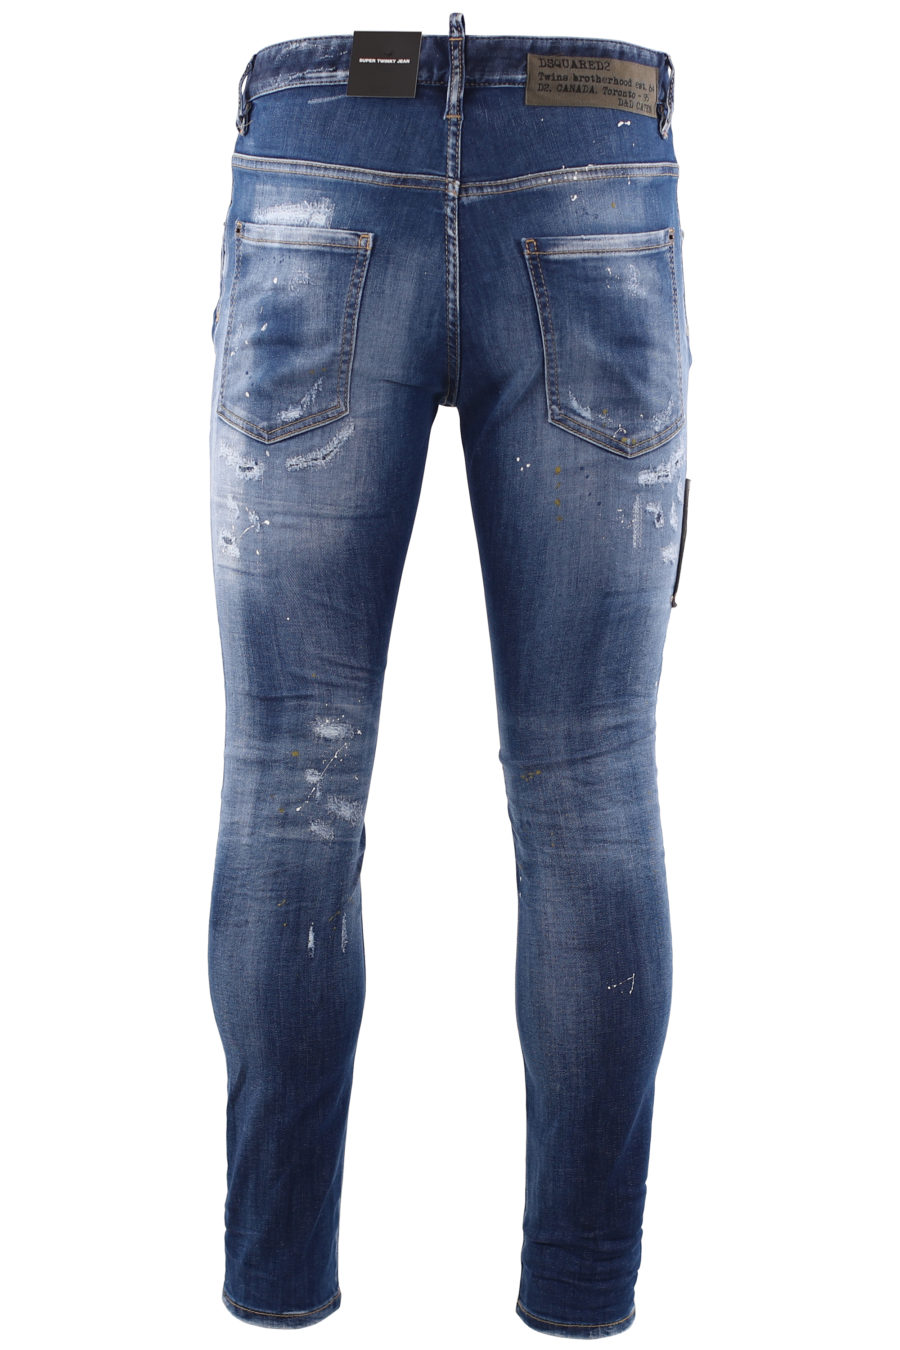 Tejano "super twinky jean" azul con parche militar - IMG 6680